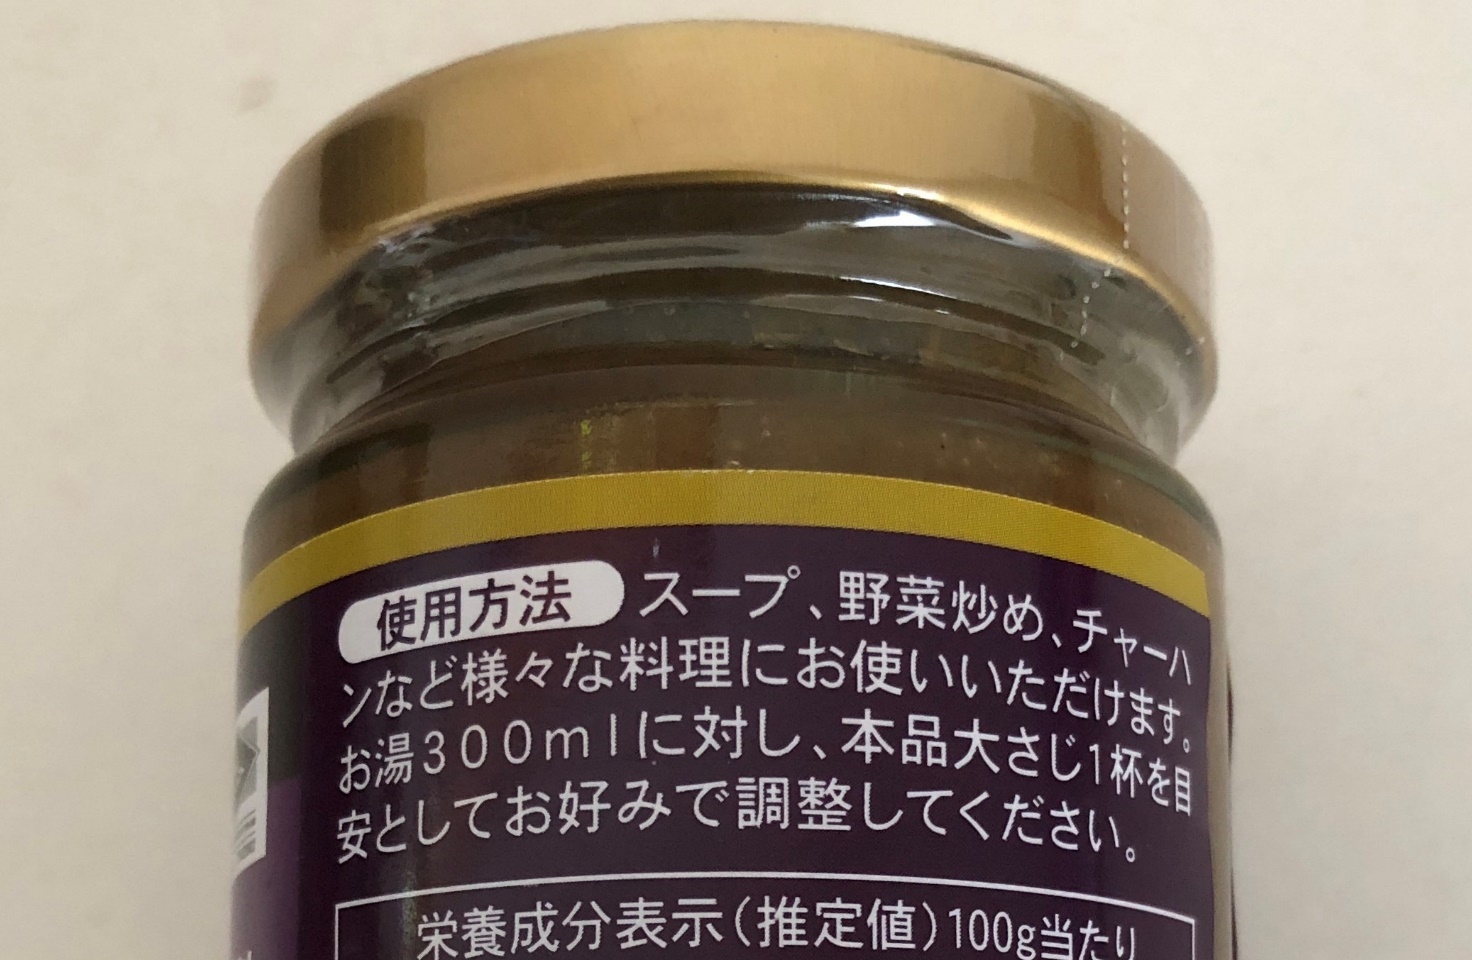 業務スーパーの「本場タイの味 万能調味料」の瓶ラベルに記載されている使用方法